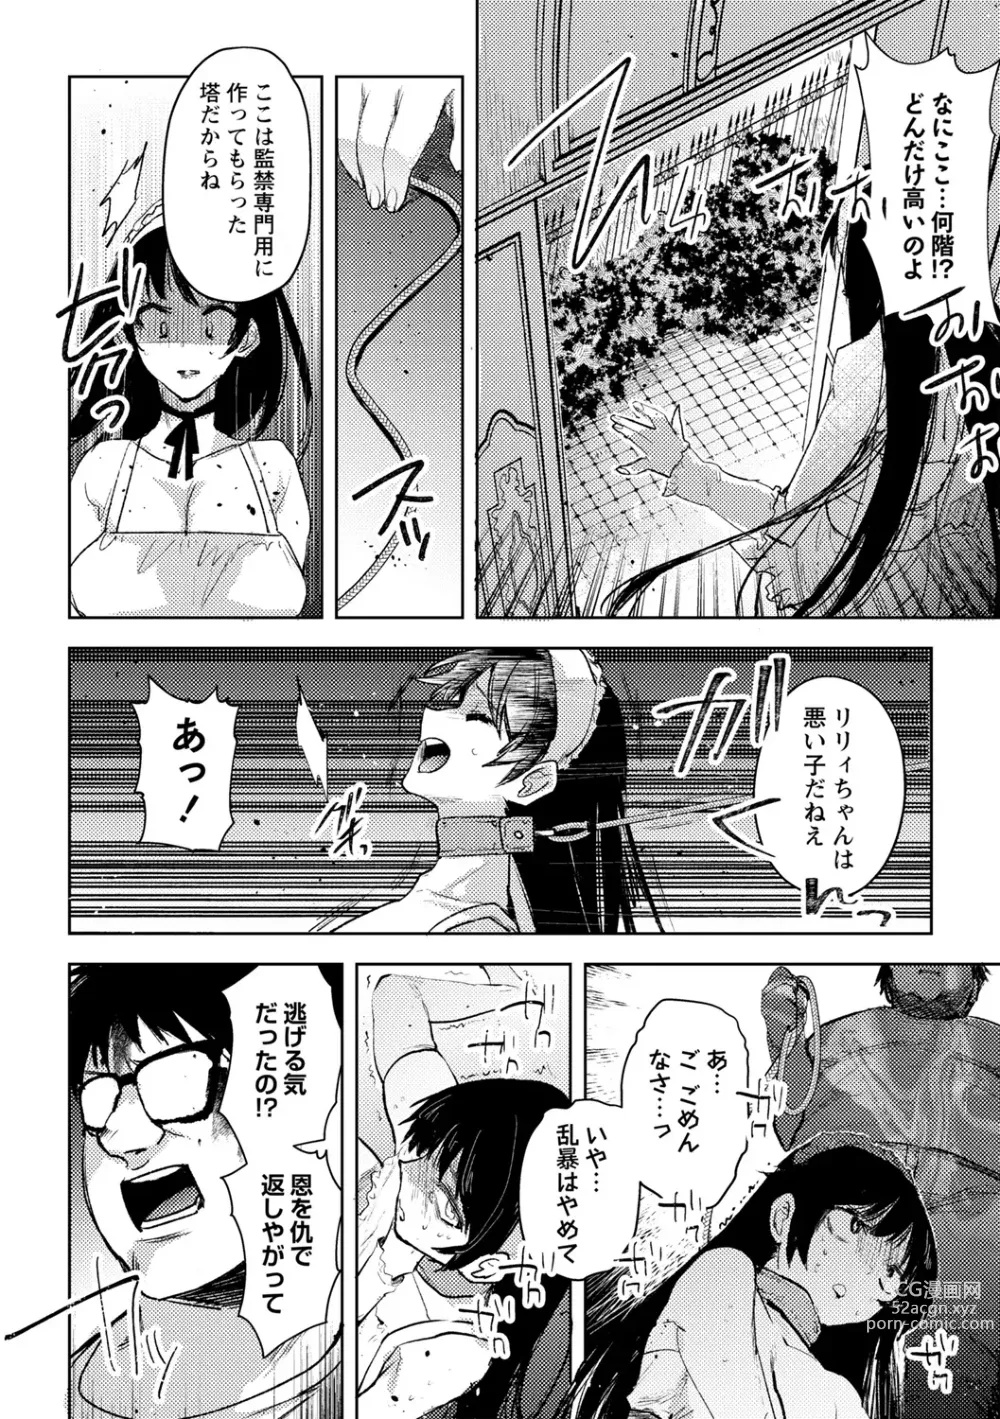 Page 20 of manga Yuuhei  KodoOji no Tou